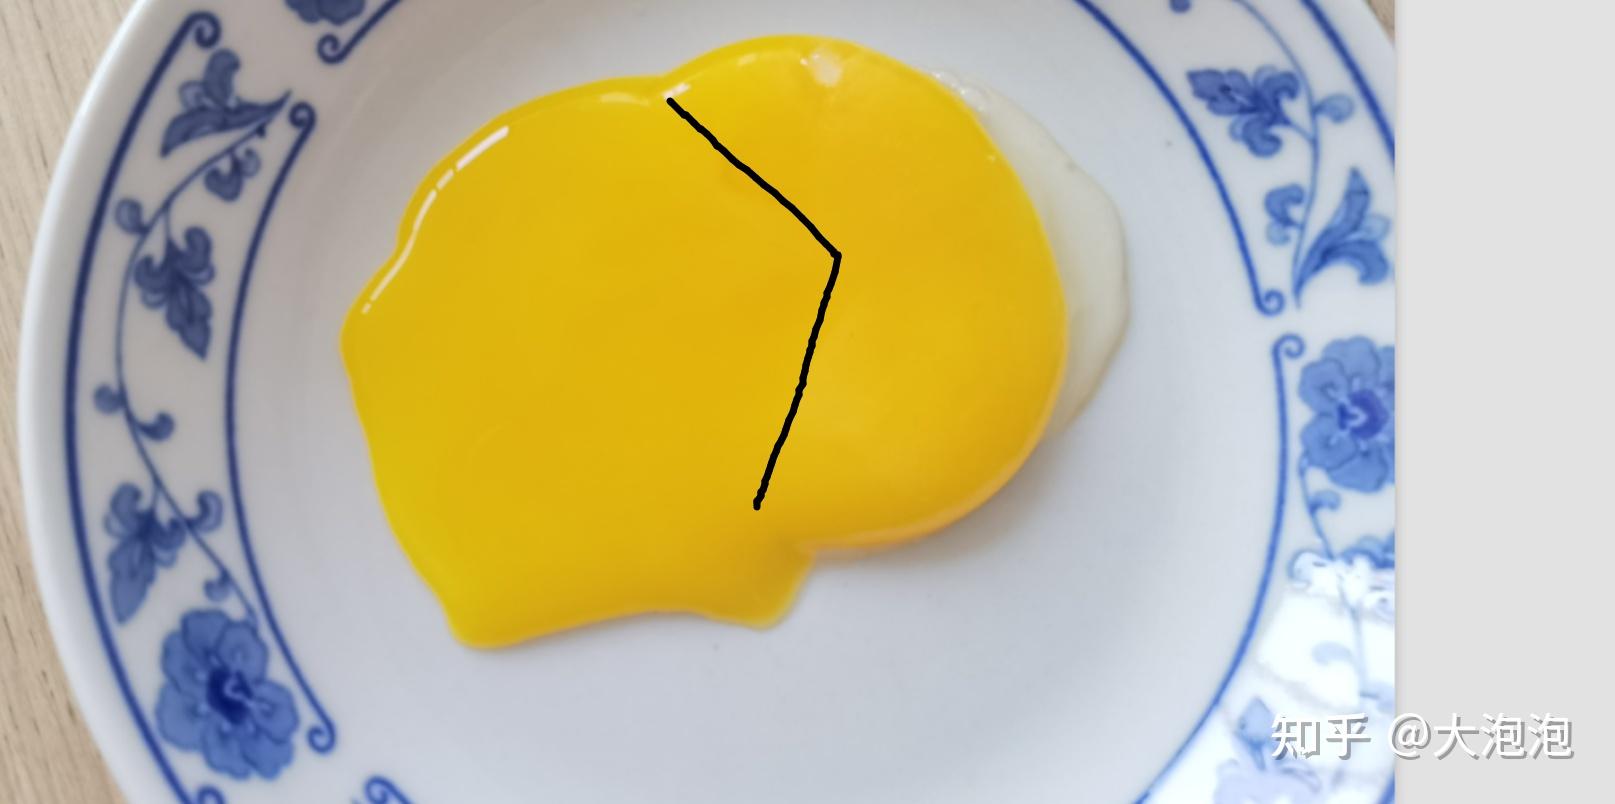 鸡蛋破蛋图片-图库-五毛网